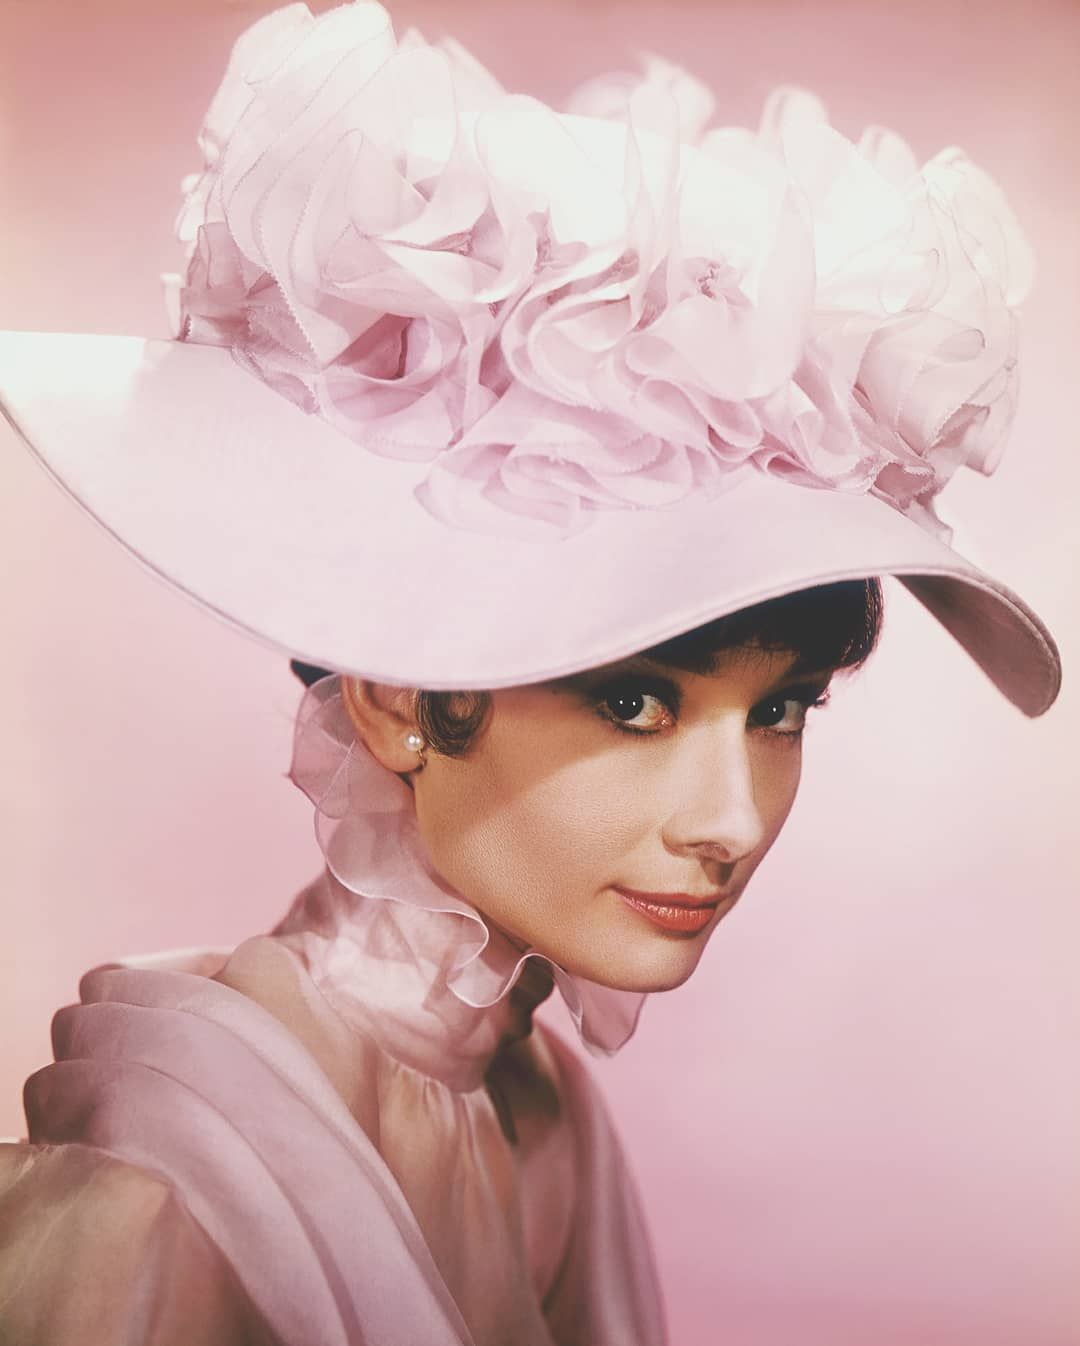 Audrey Hepburn Fan On Instagram In A Promotional Photo